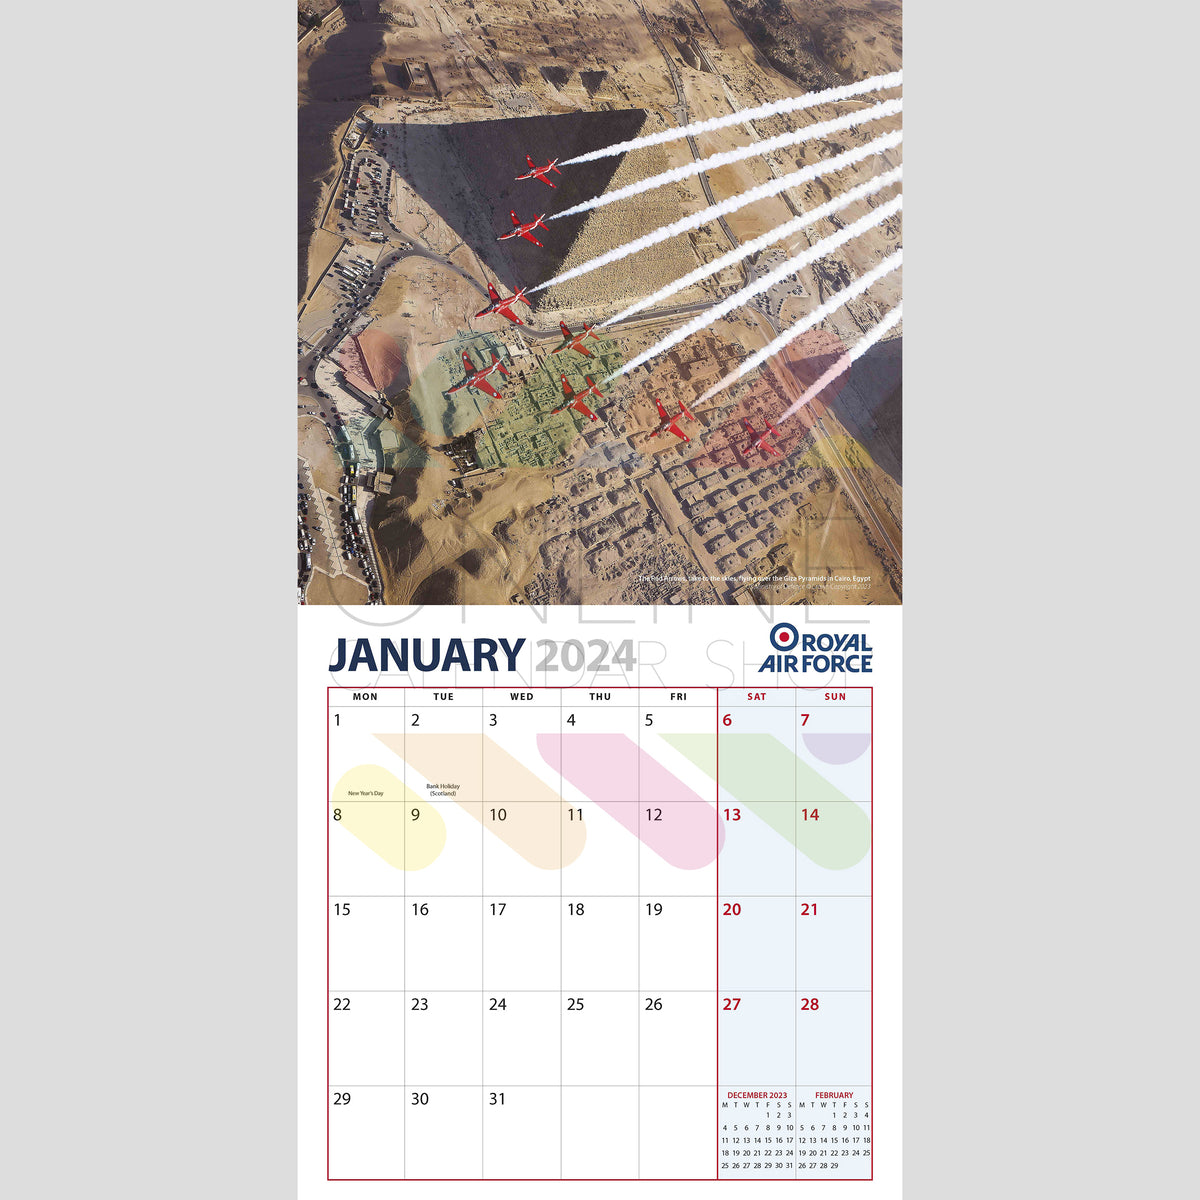 OFFICIAL ROYAL AIR FORCE 2024 CALENDAR Online Calendar Shop